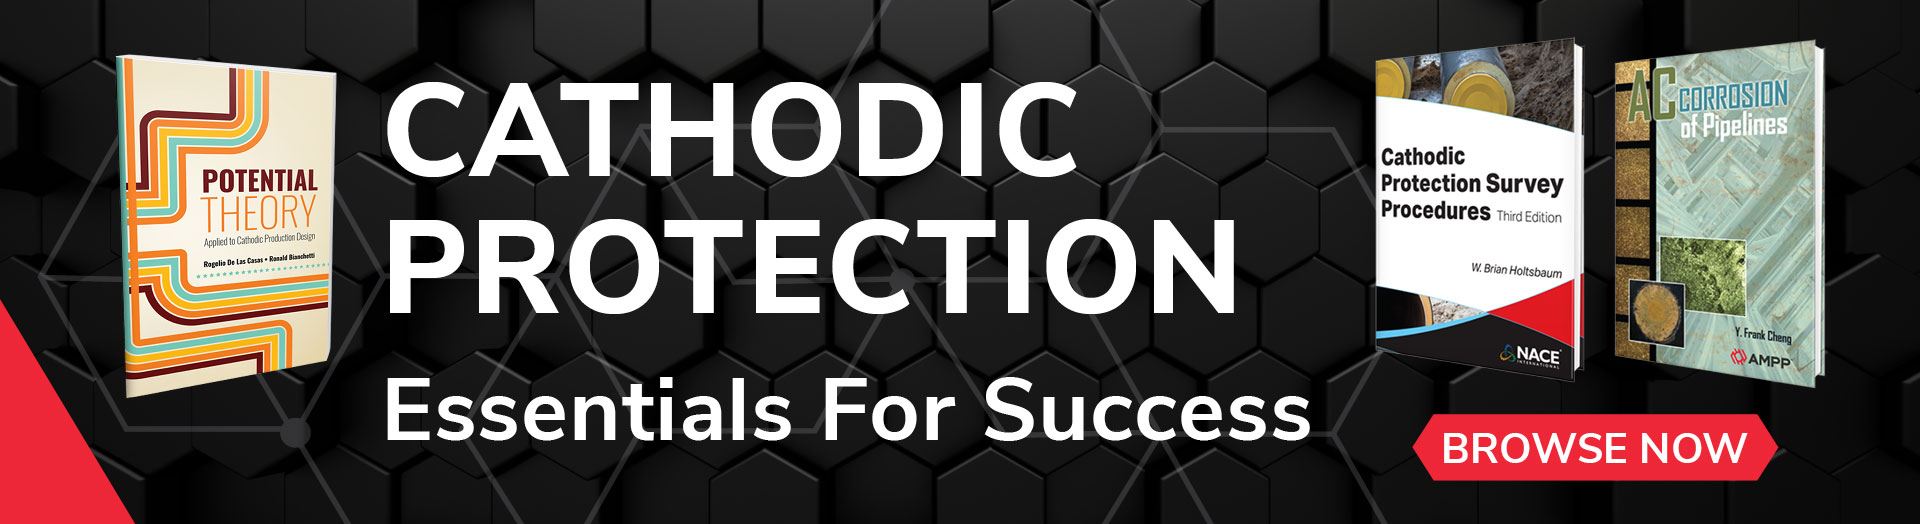 Cathodic protection essentials for success